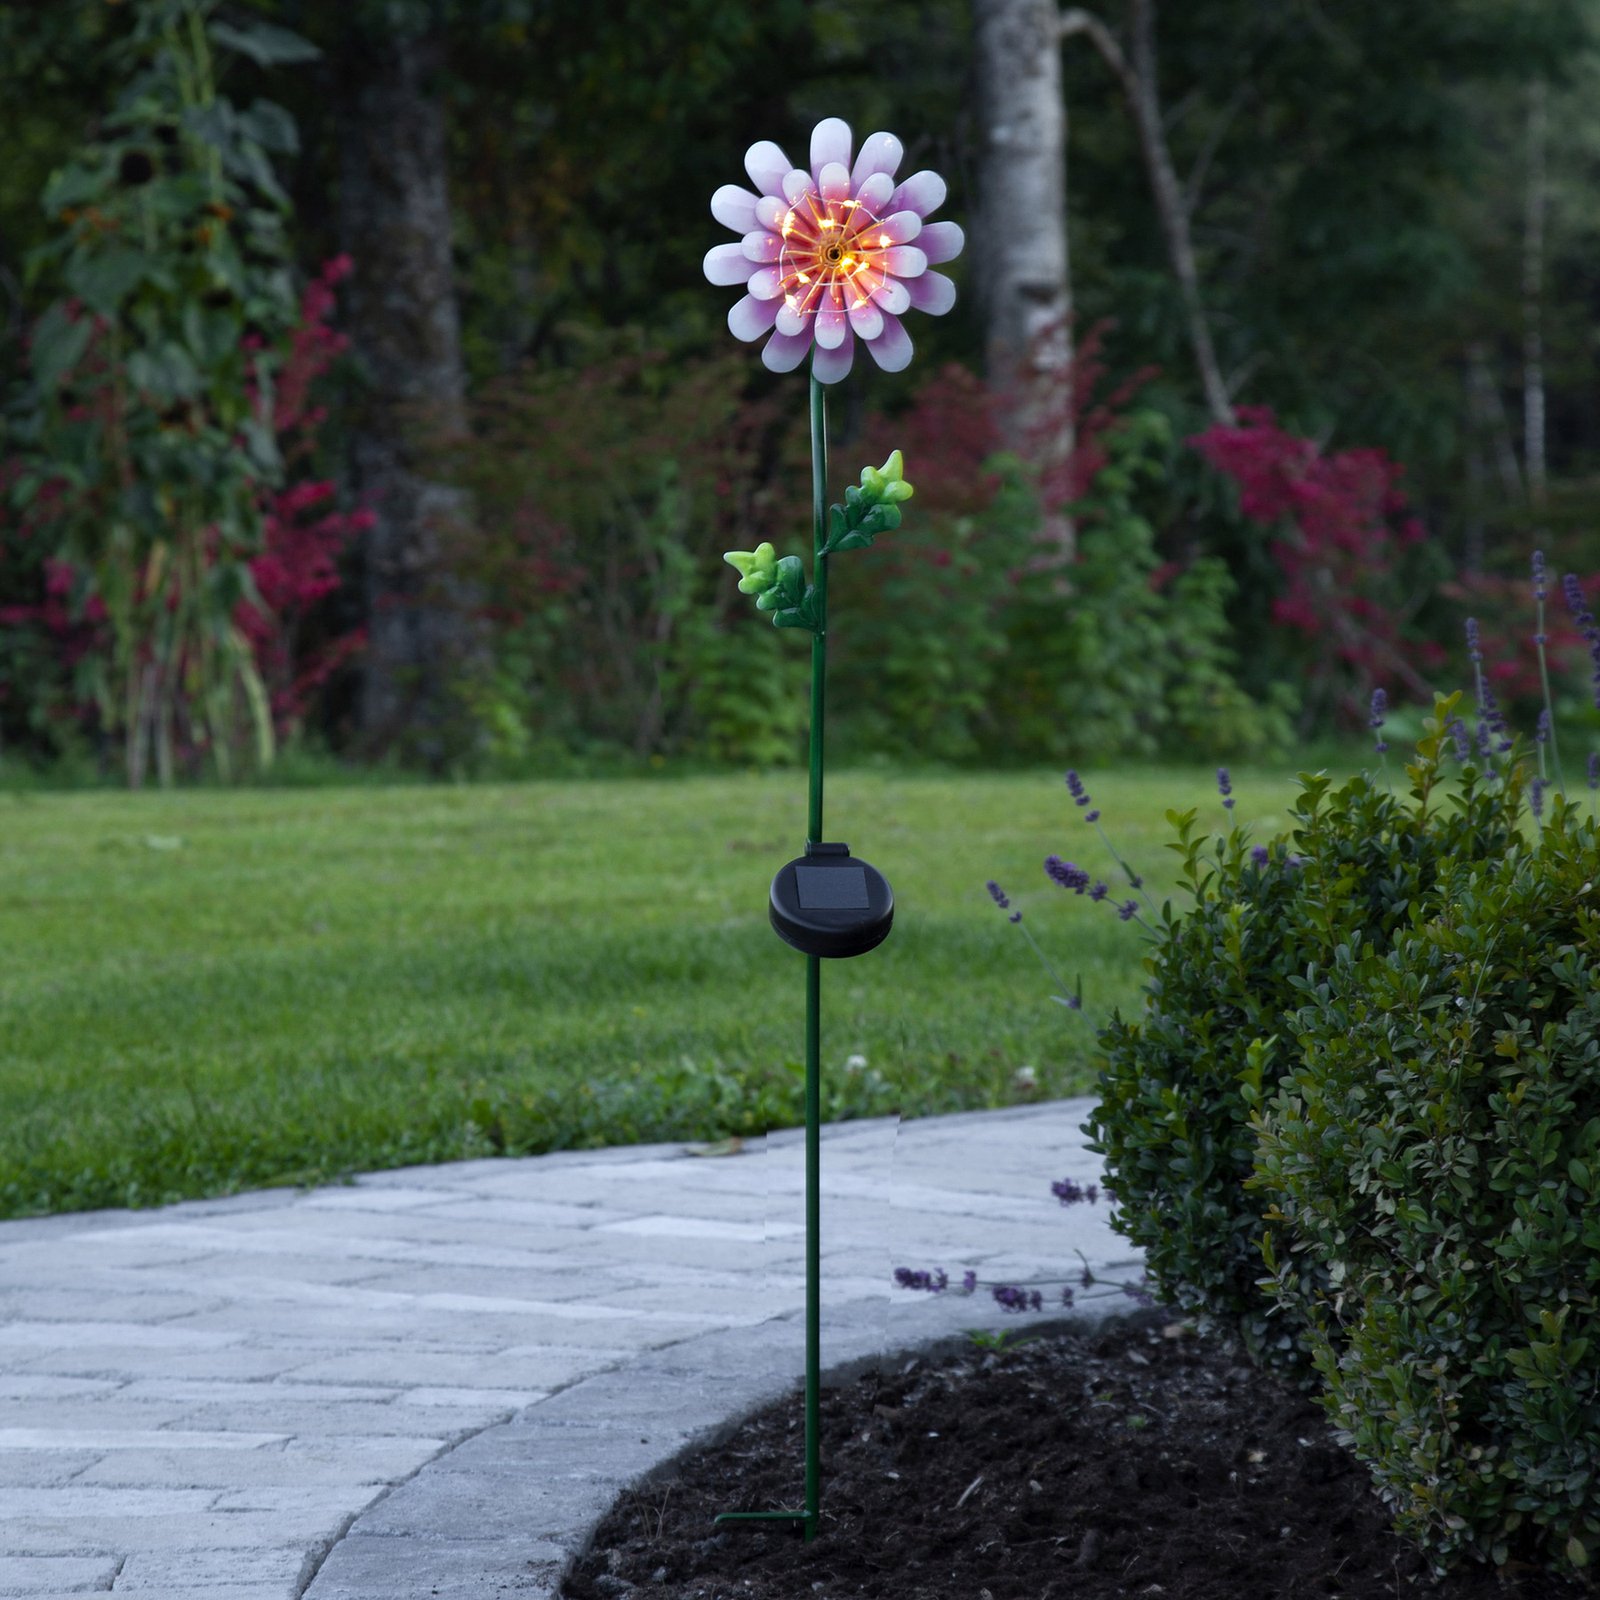 Pink Daisy LED napelemes lámpa virág alakú